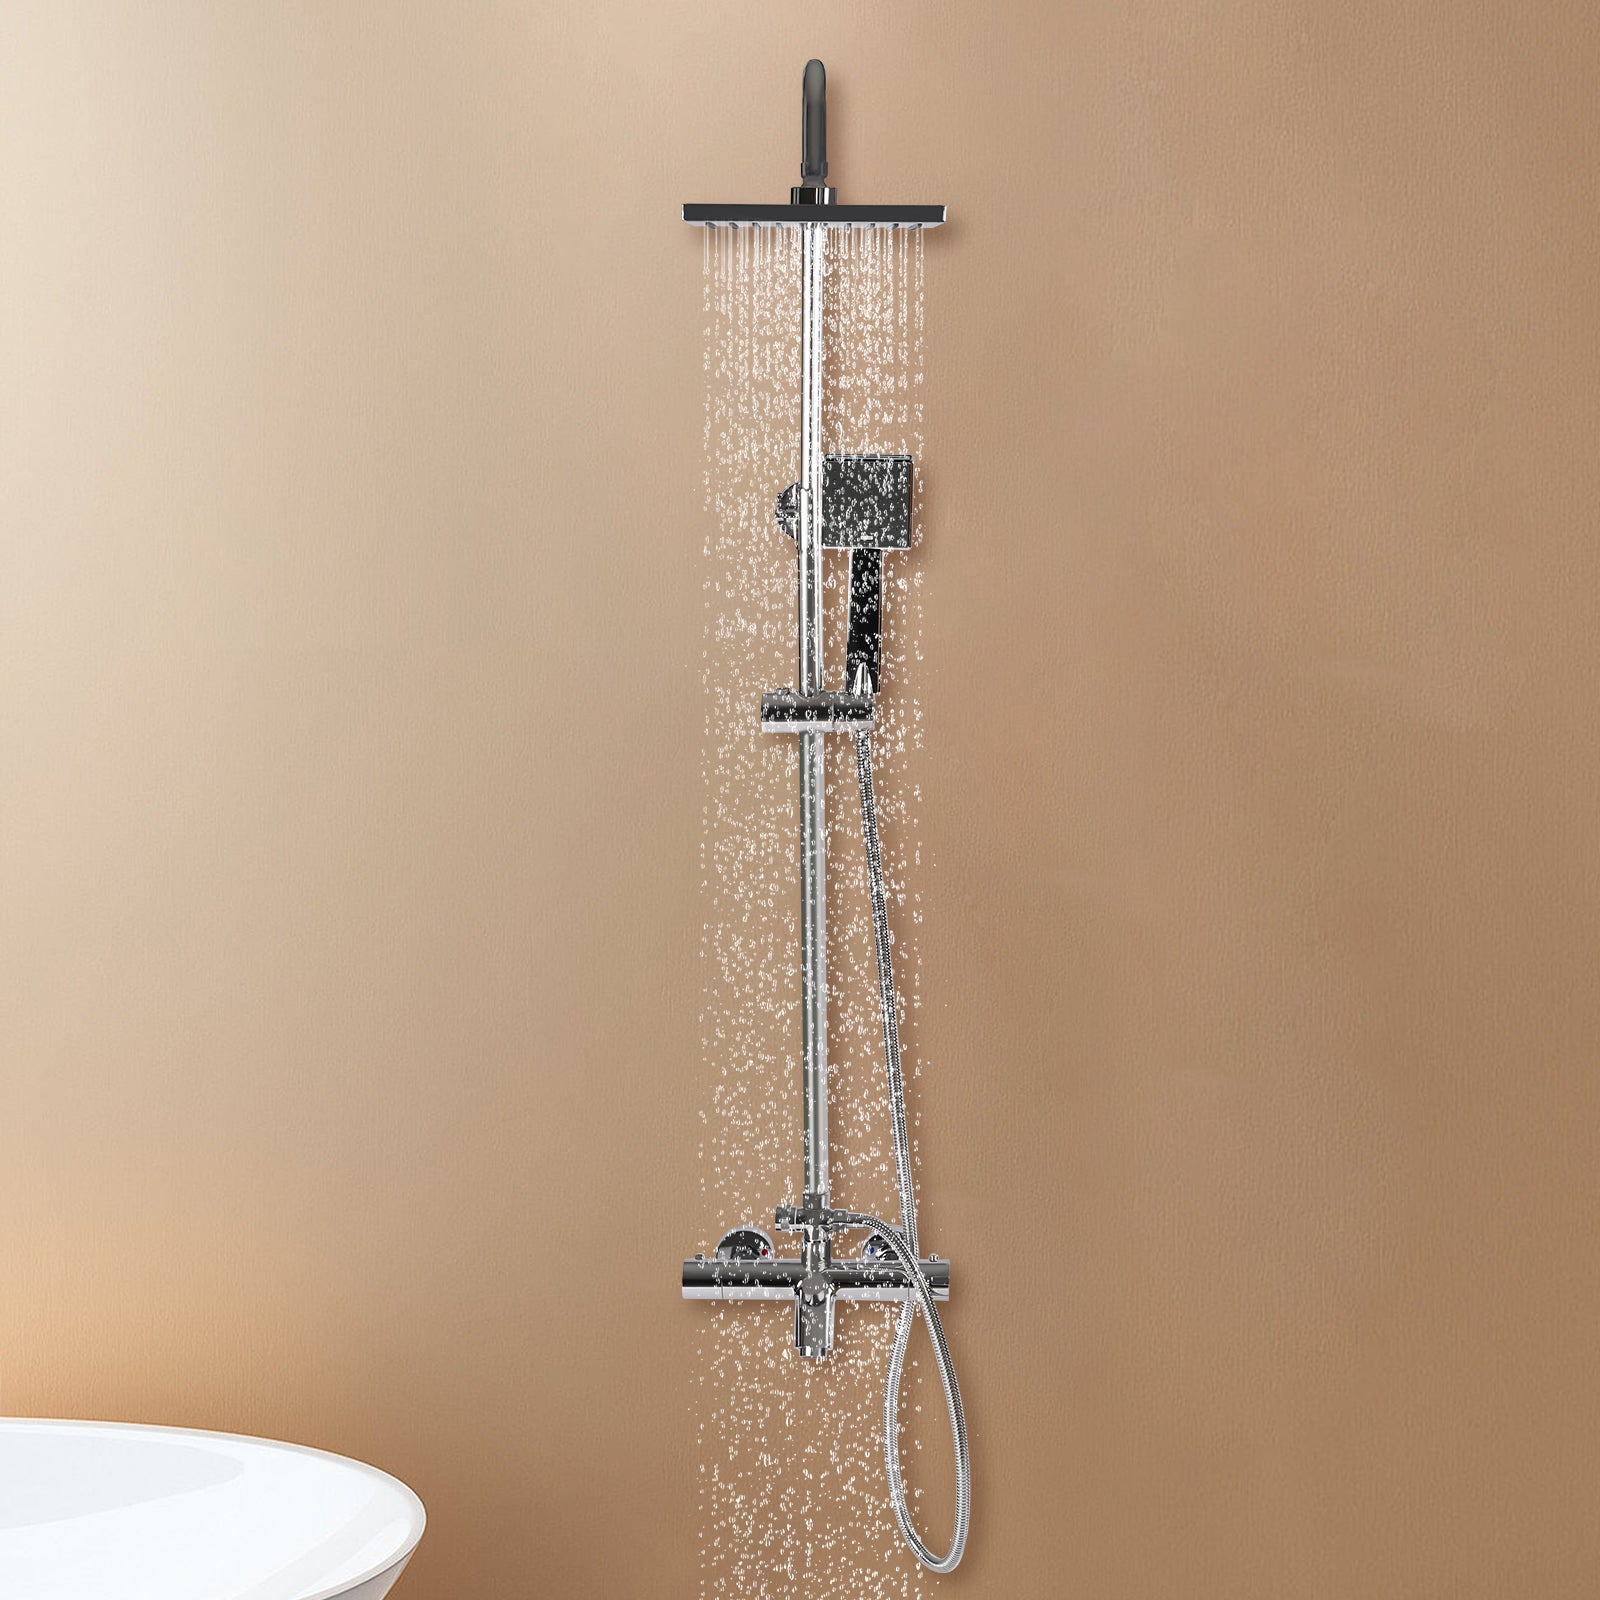 Duschsystem mit Thermostat, 304 Edelstahl Regen Dusche Dusche Armatur Set Bad Wasserhahn Thermostat Kupfer für Badezimmer